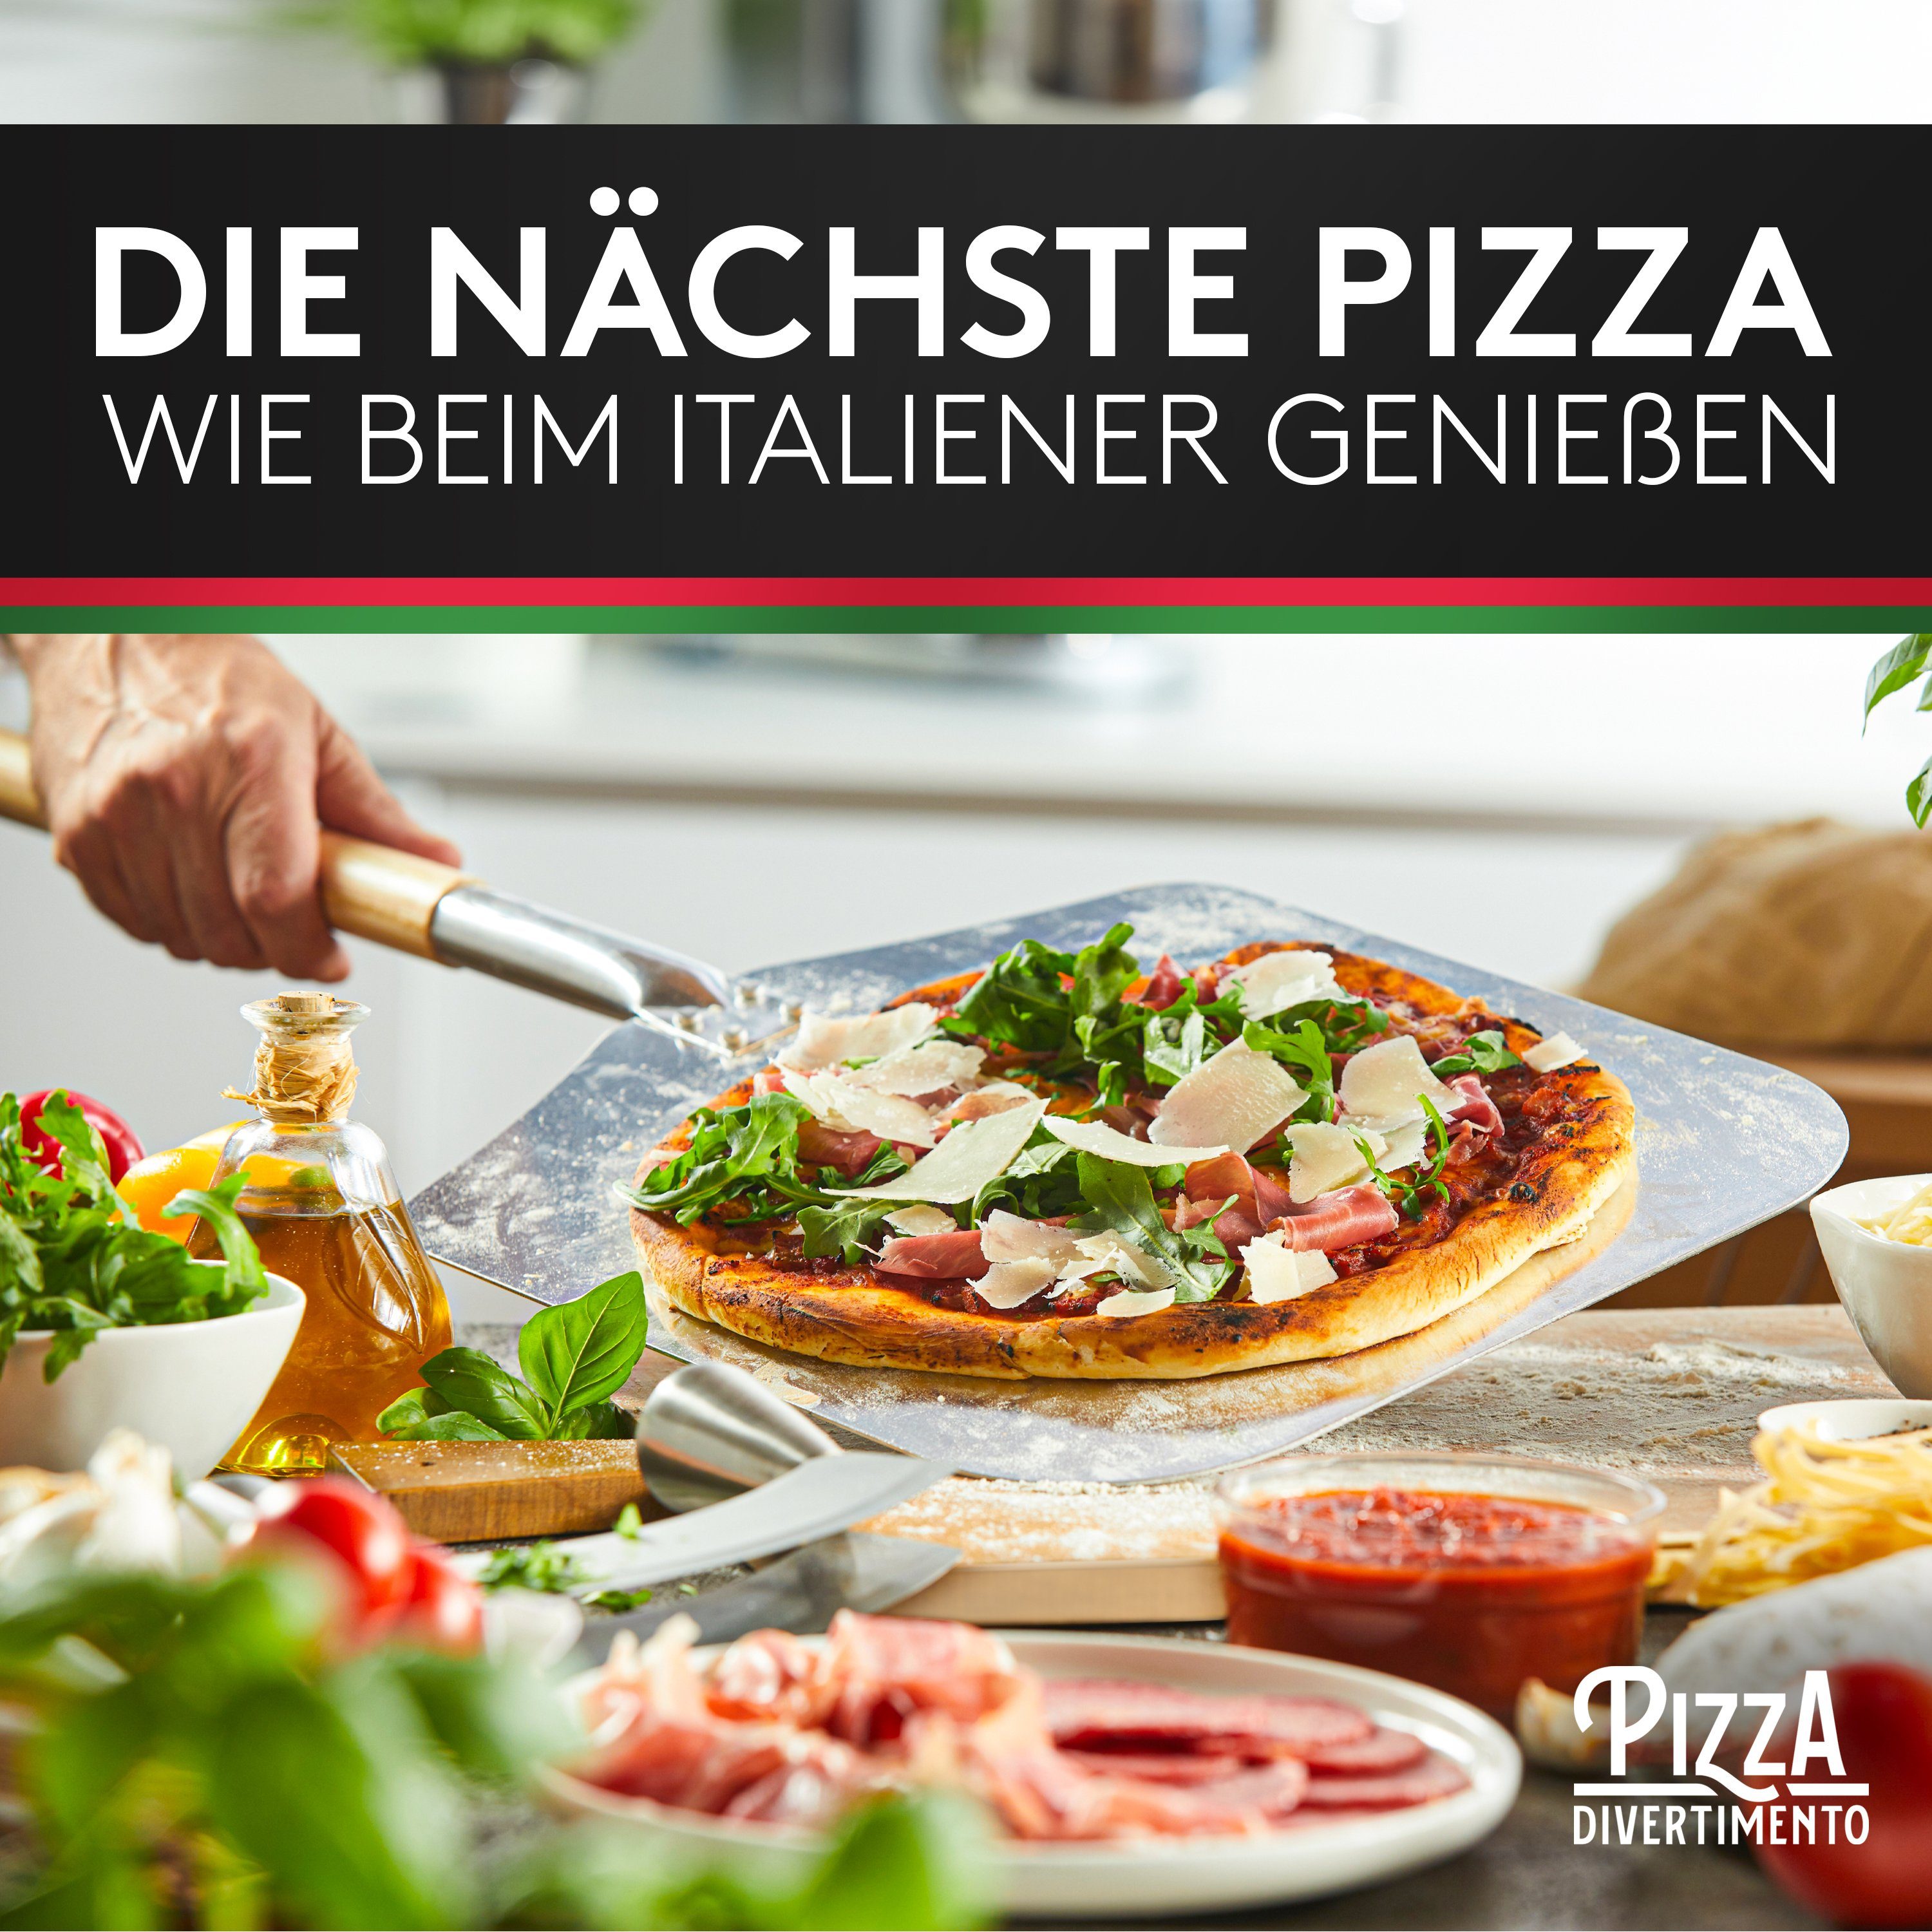 Pizza Divertimento Pizzastein Mit Divertimento Pizza Pizzaschieber, Pizzastein – Anti-Haft-Beschichtung